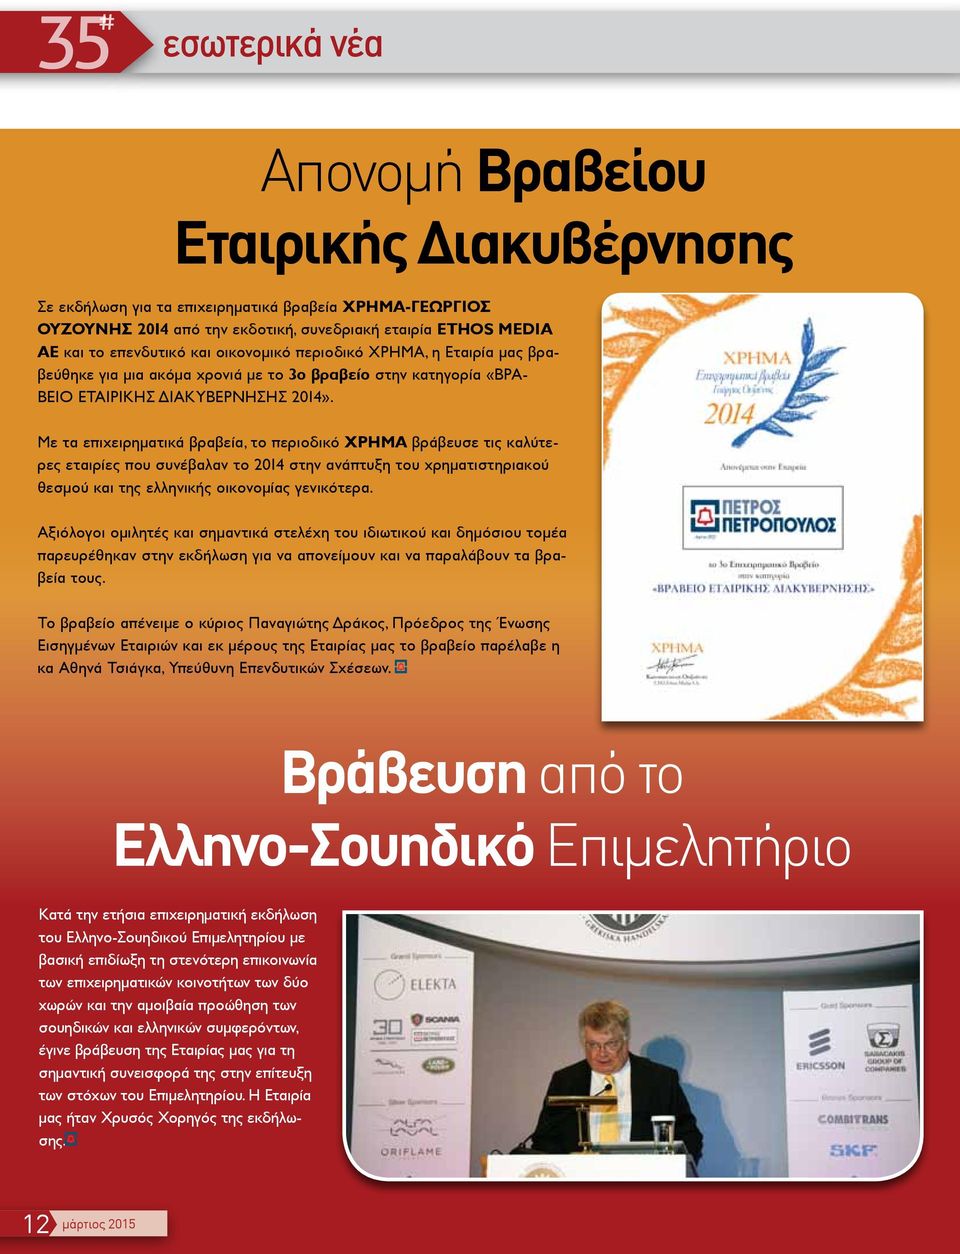 Με τα επιχειρηματικά βραβεία, το περιοδικό ΧΡΗΜΑ βράβευσε τις καλύτερες εταιρίες που συνέβαλαν το 2014 στην ανάπτυξη του χρηματιστηριακού θεσμού και της ελληνικής οικονομίας γενικότερα.